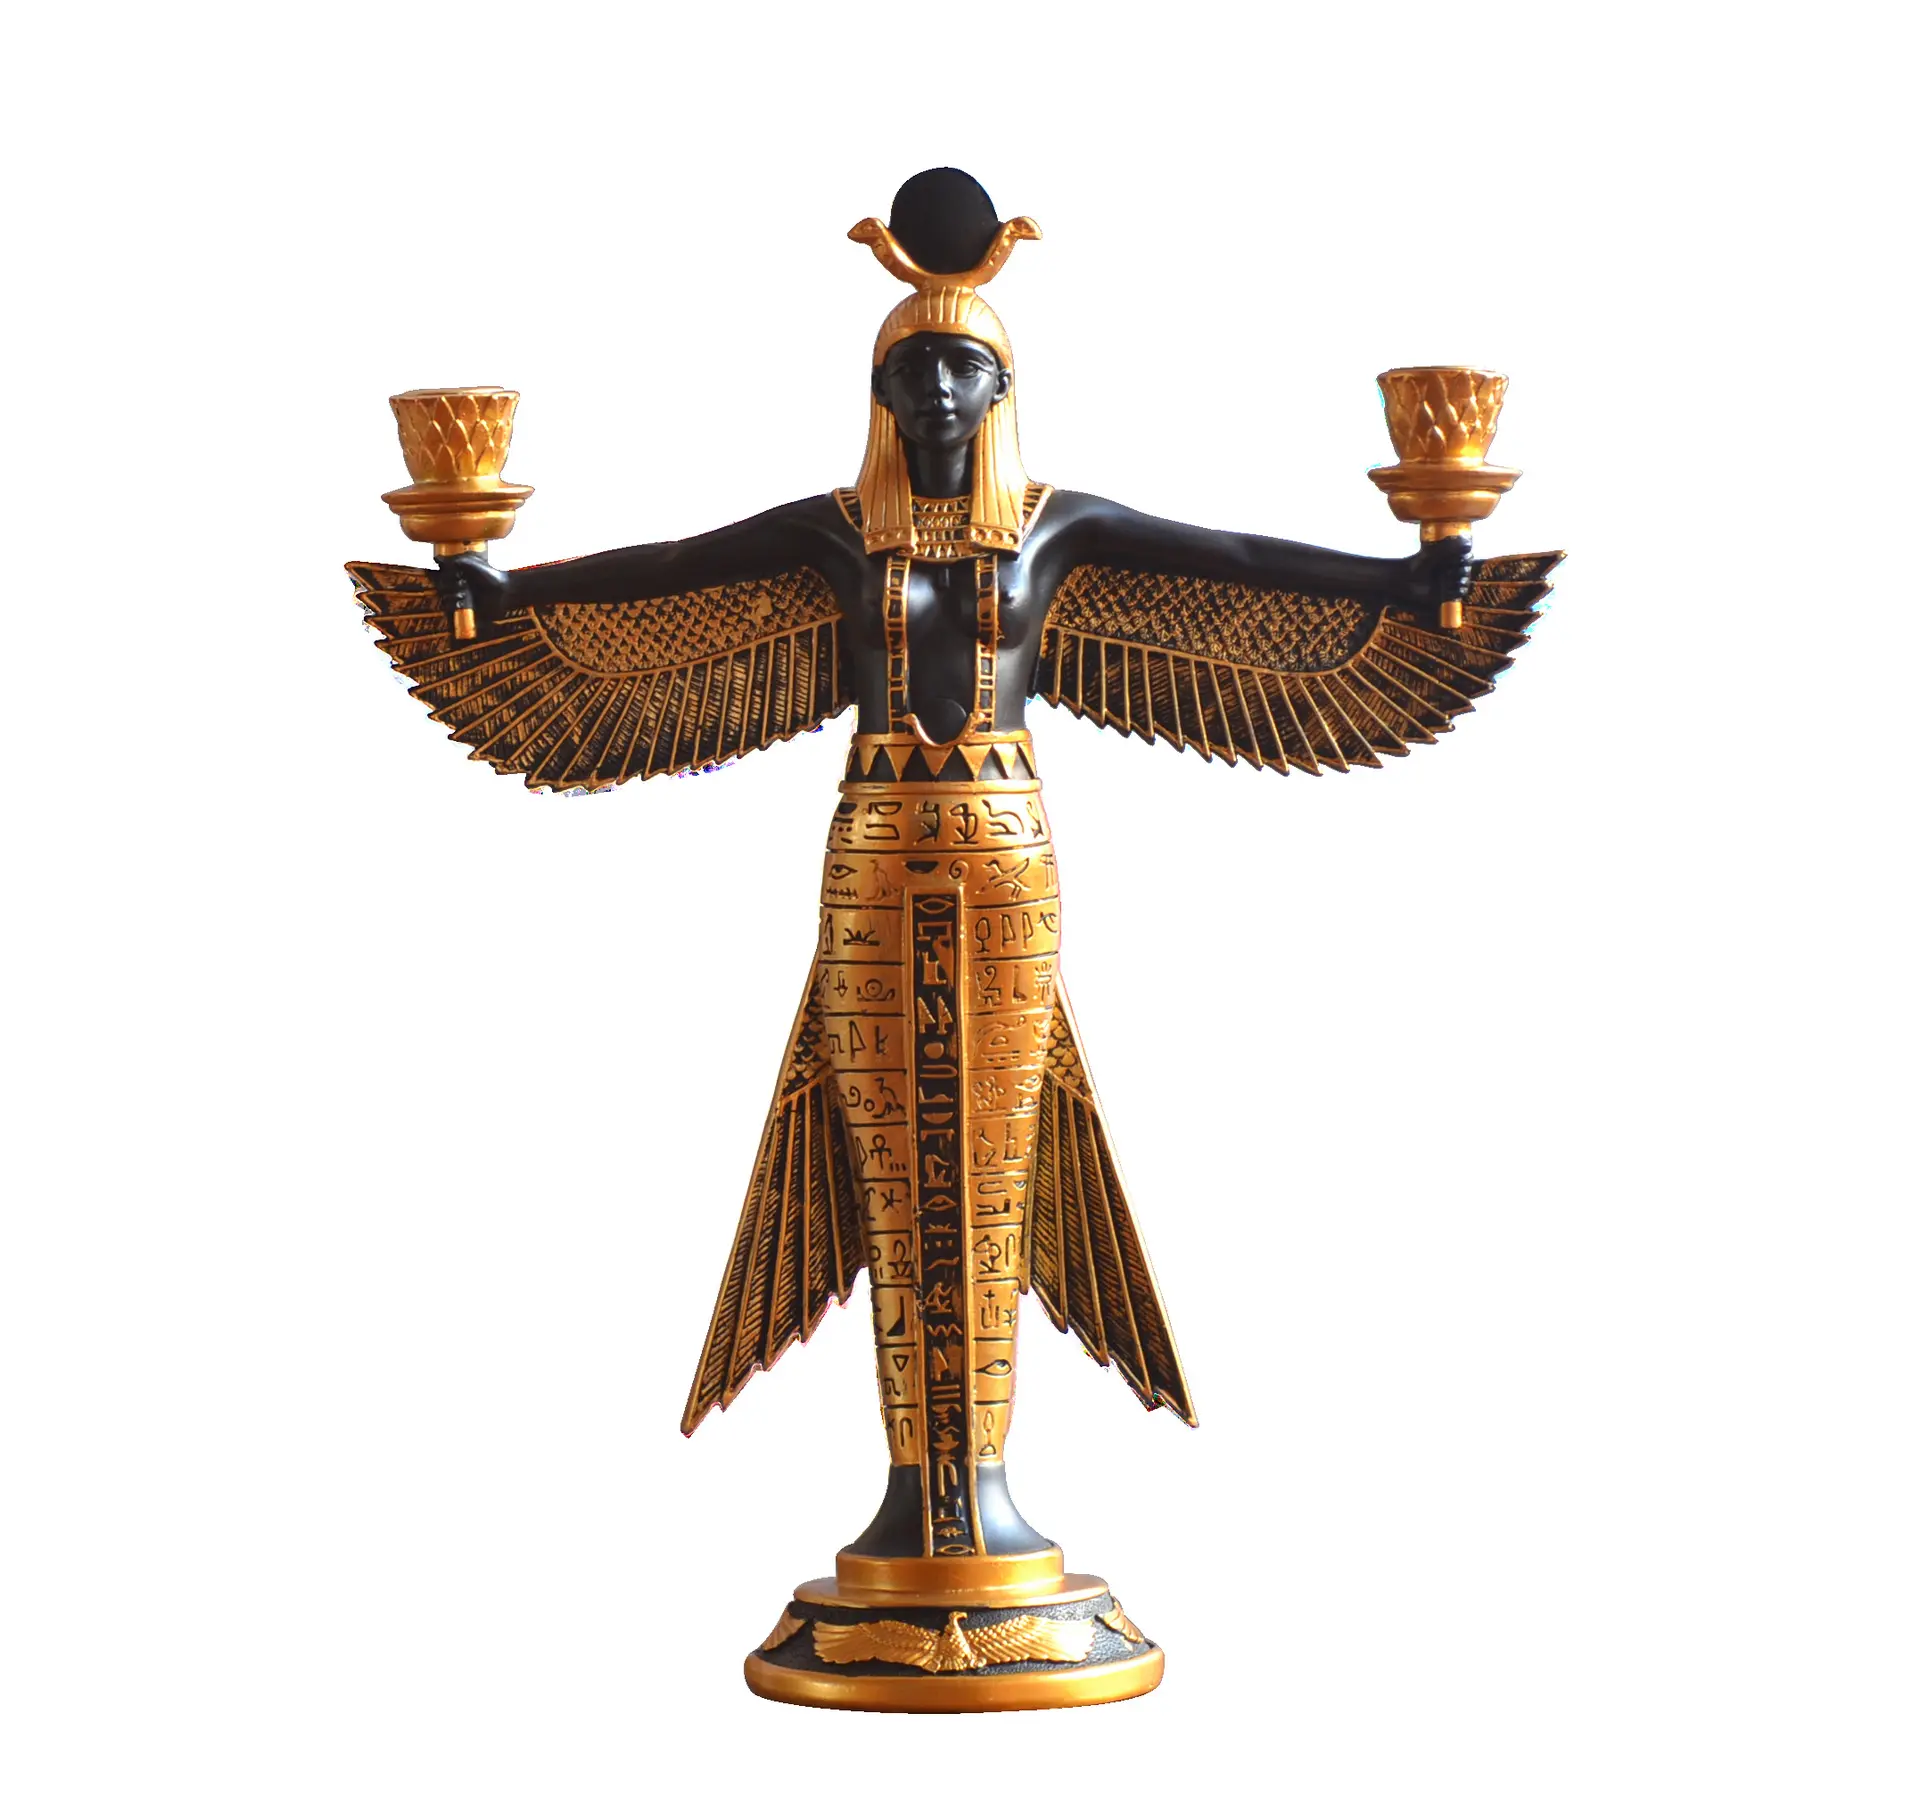 فايبر جلاس بالحجم الطبيعي المصري تماثيل للبيع الدينية تماثيل المصرية المنزل ديكور